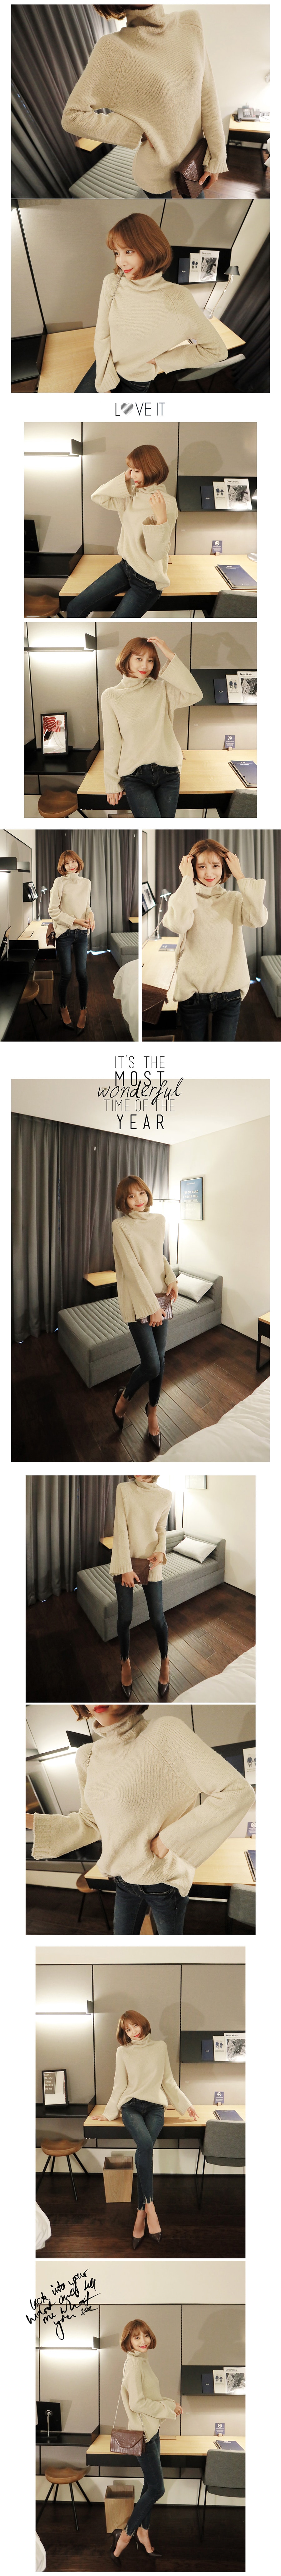 KOREA Wide Long Sleeve Turtleneck Sweater Beige One Size(Free) [Free Shipping]